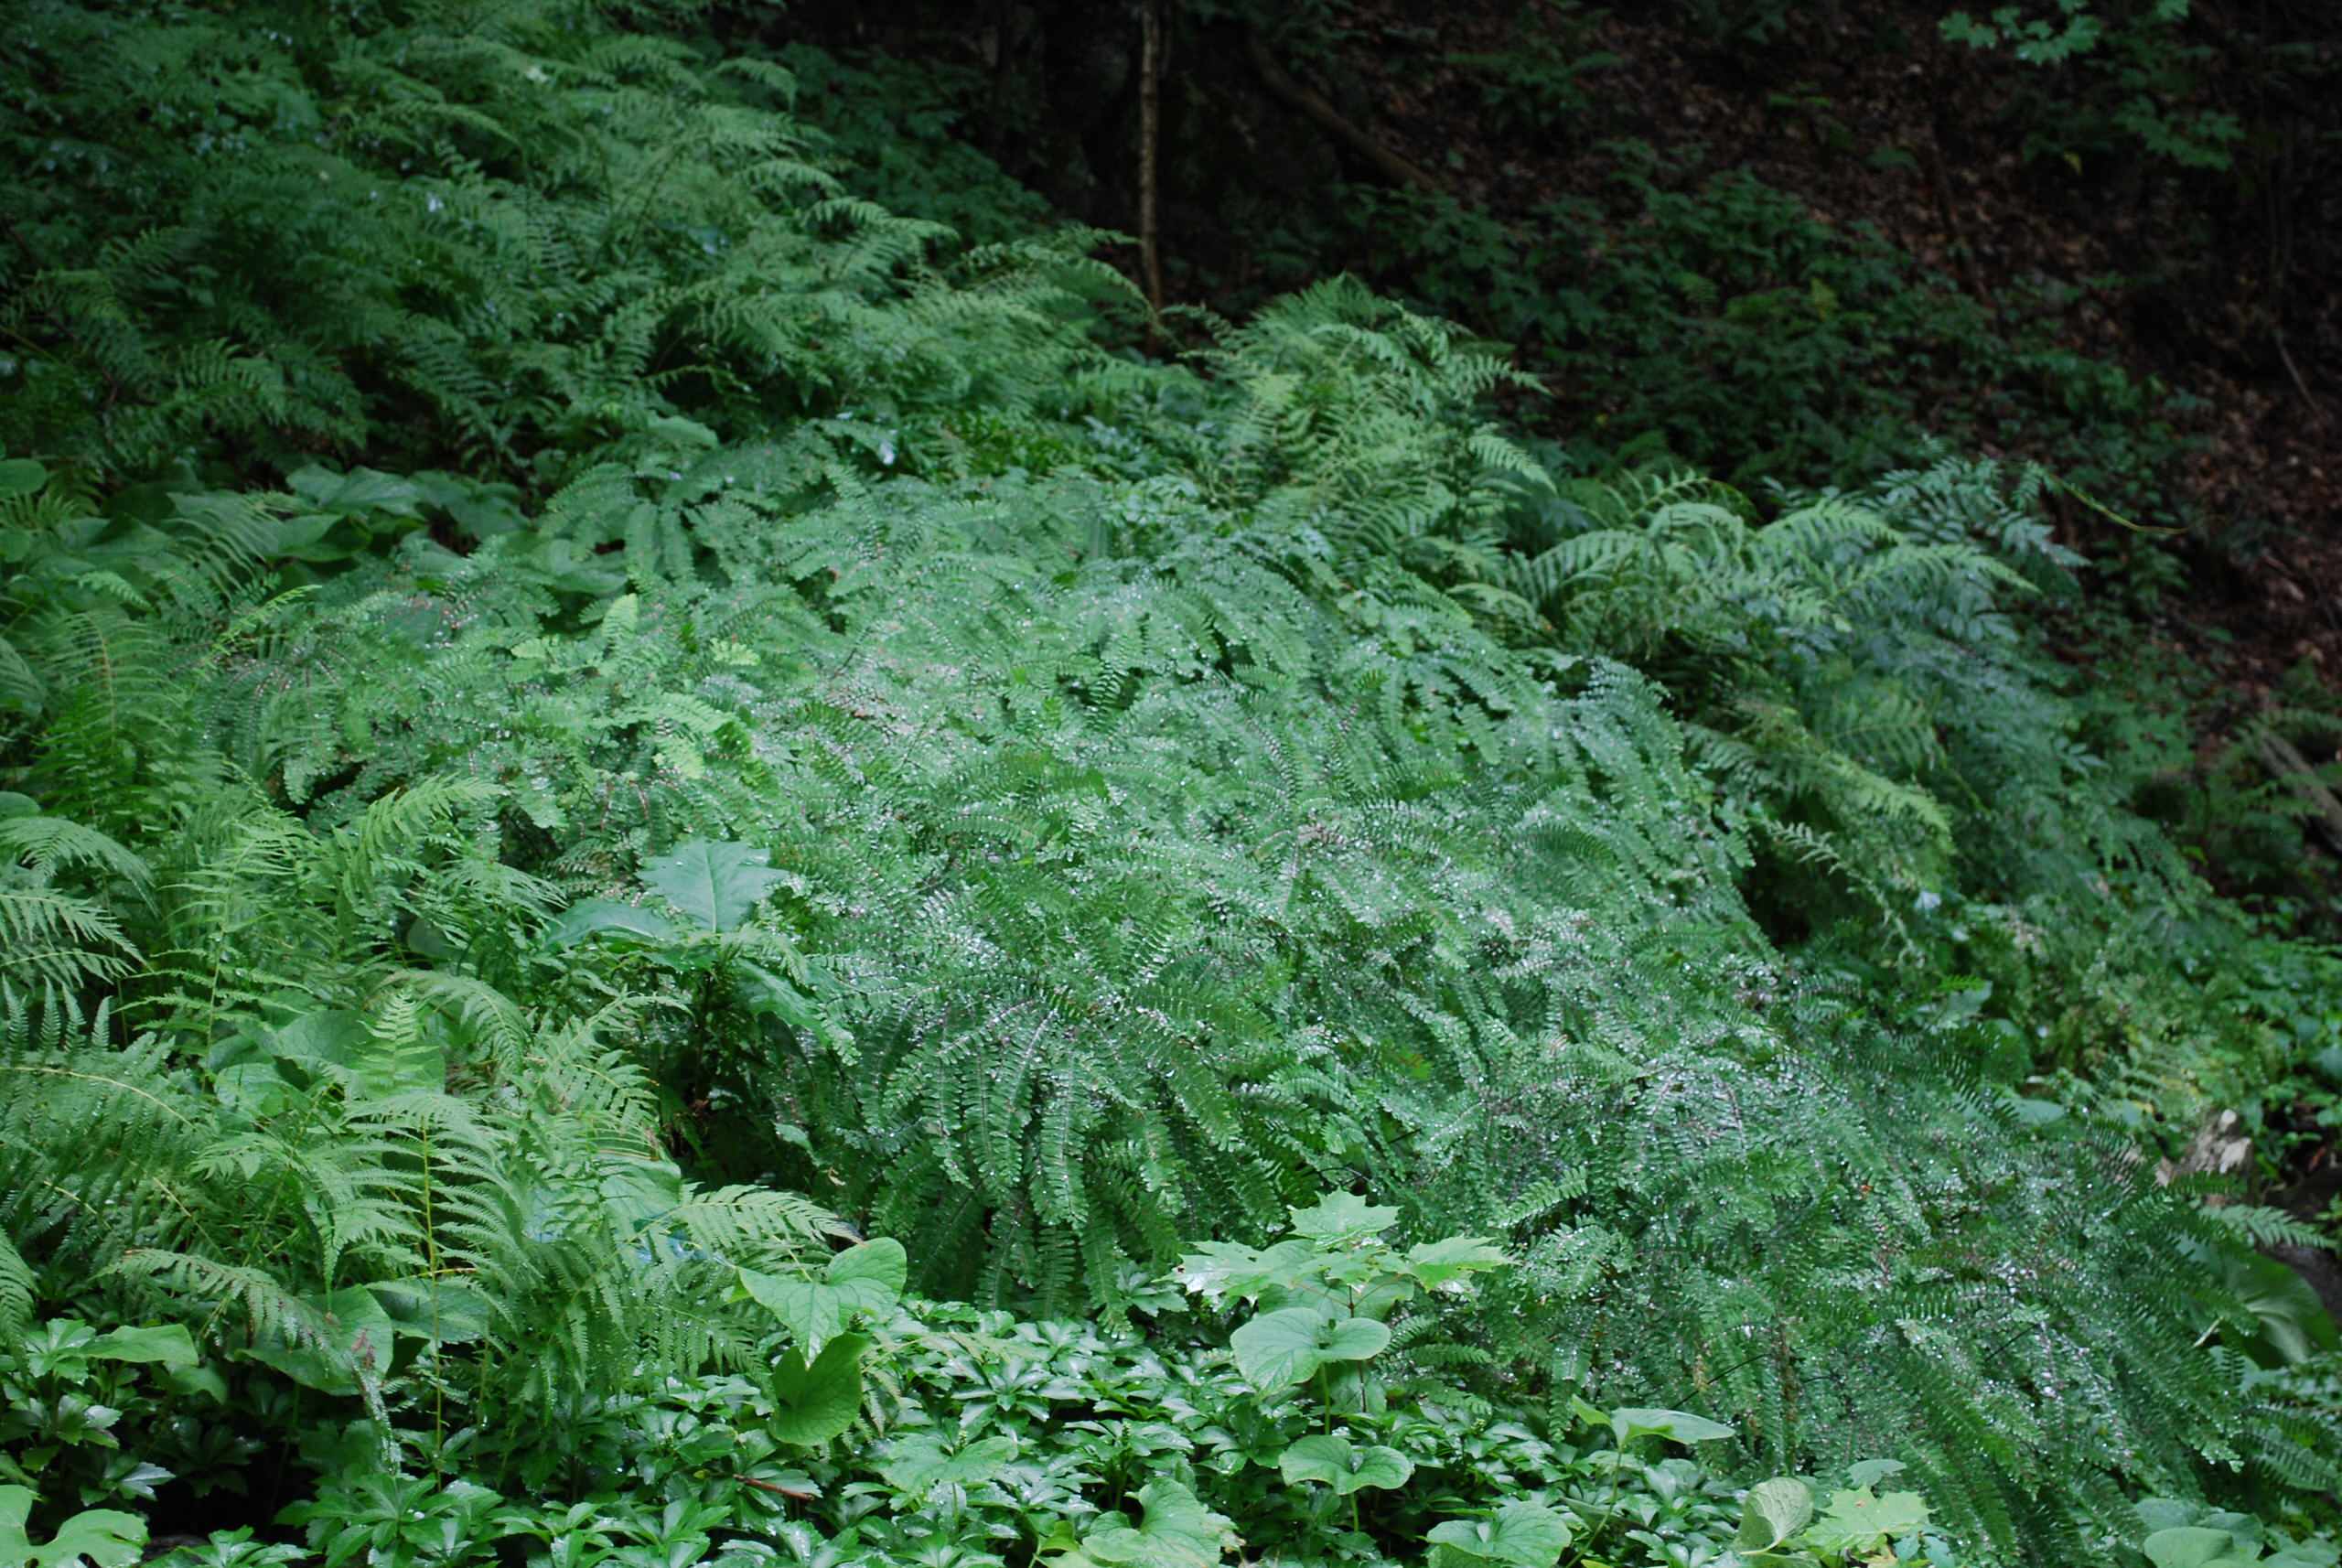 A fern garden at Innisfree